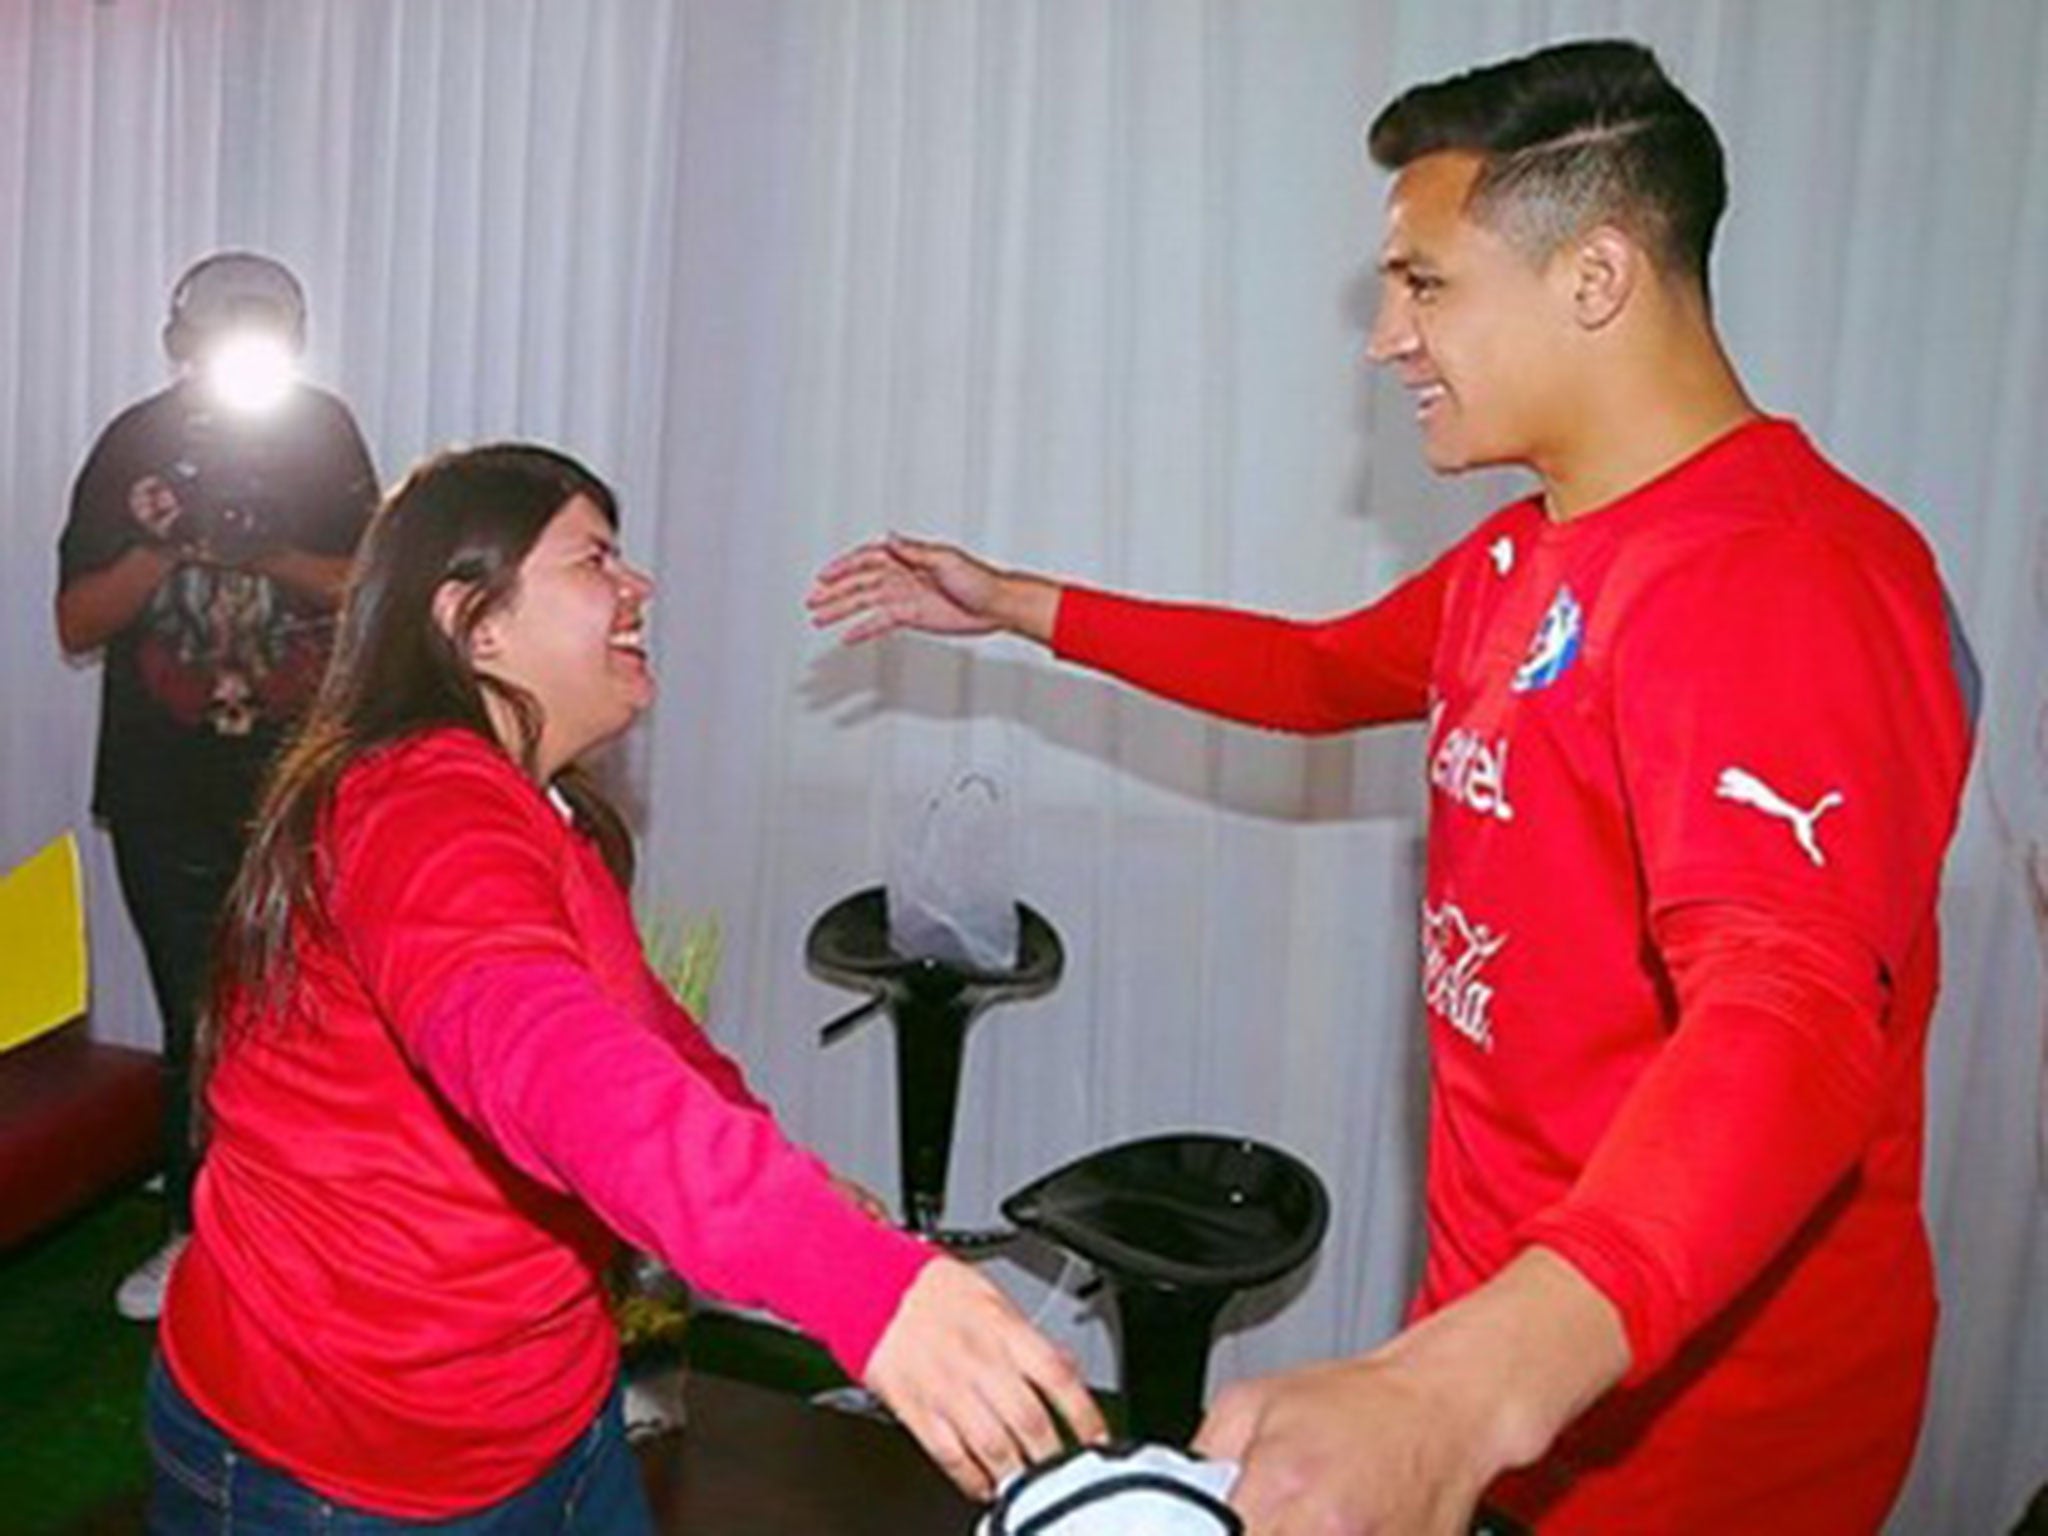 Alexis Sanchez greets the fan